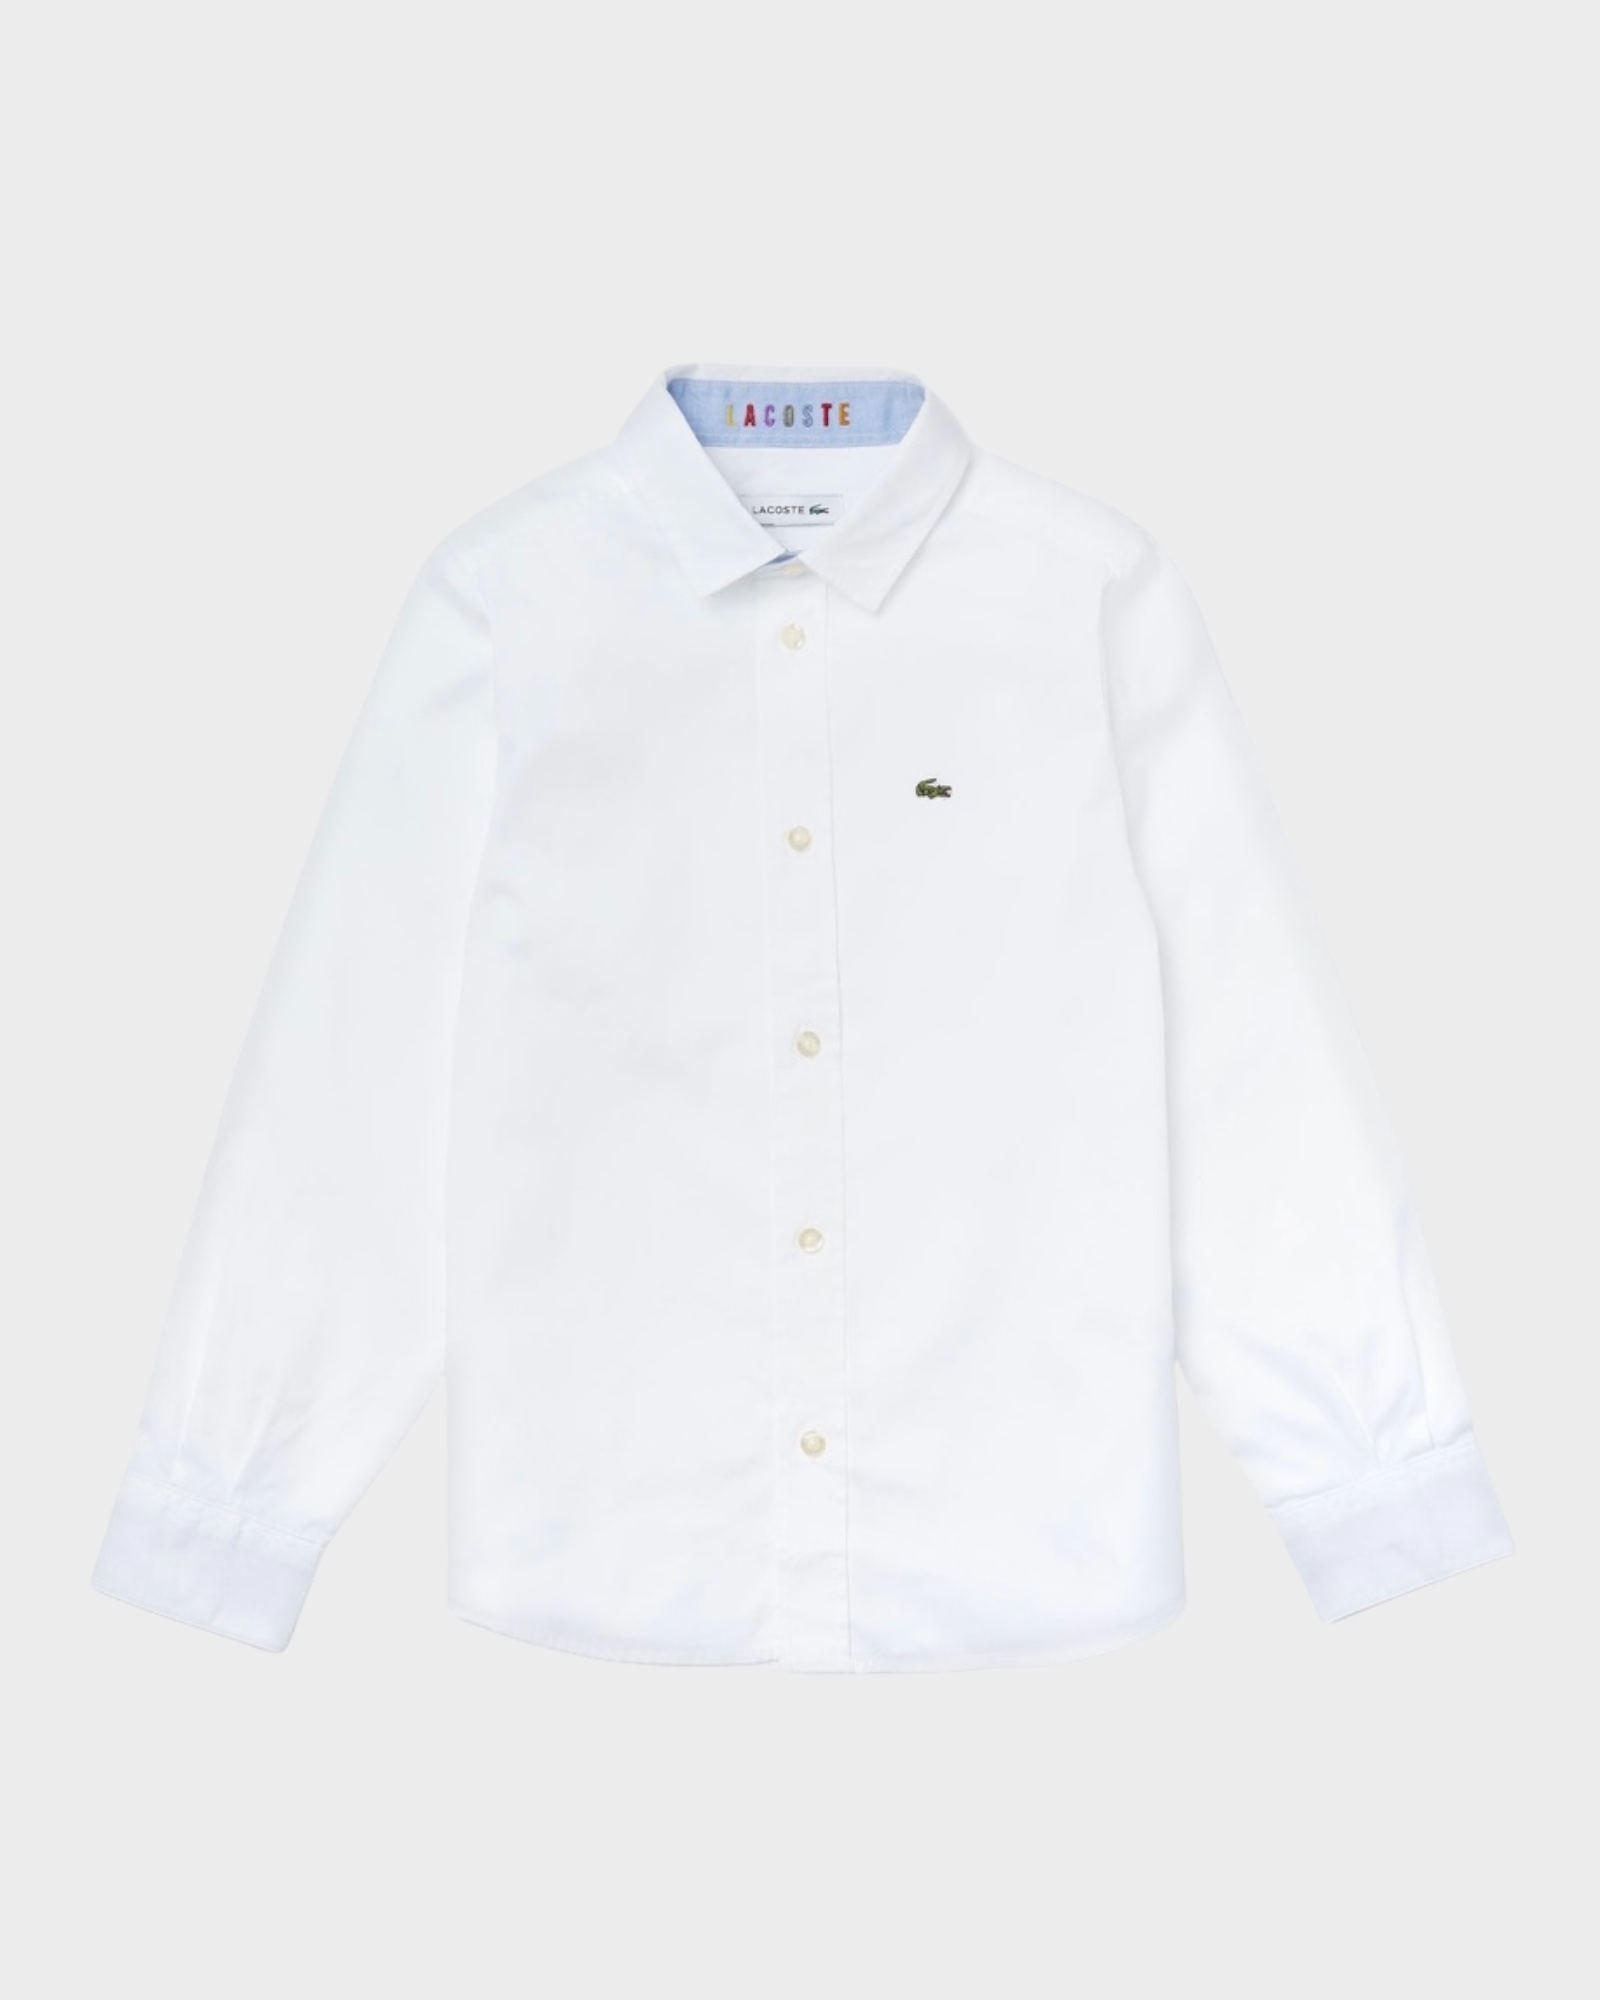 Hvid skjorte til style no. CJ8077 00 001 | Lacoste | Rungsted Havn Thomas